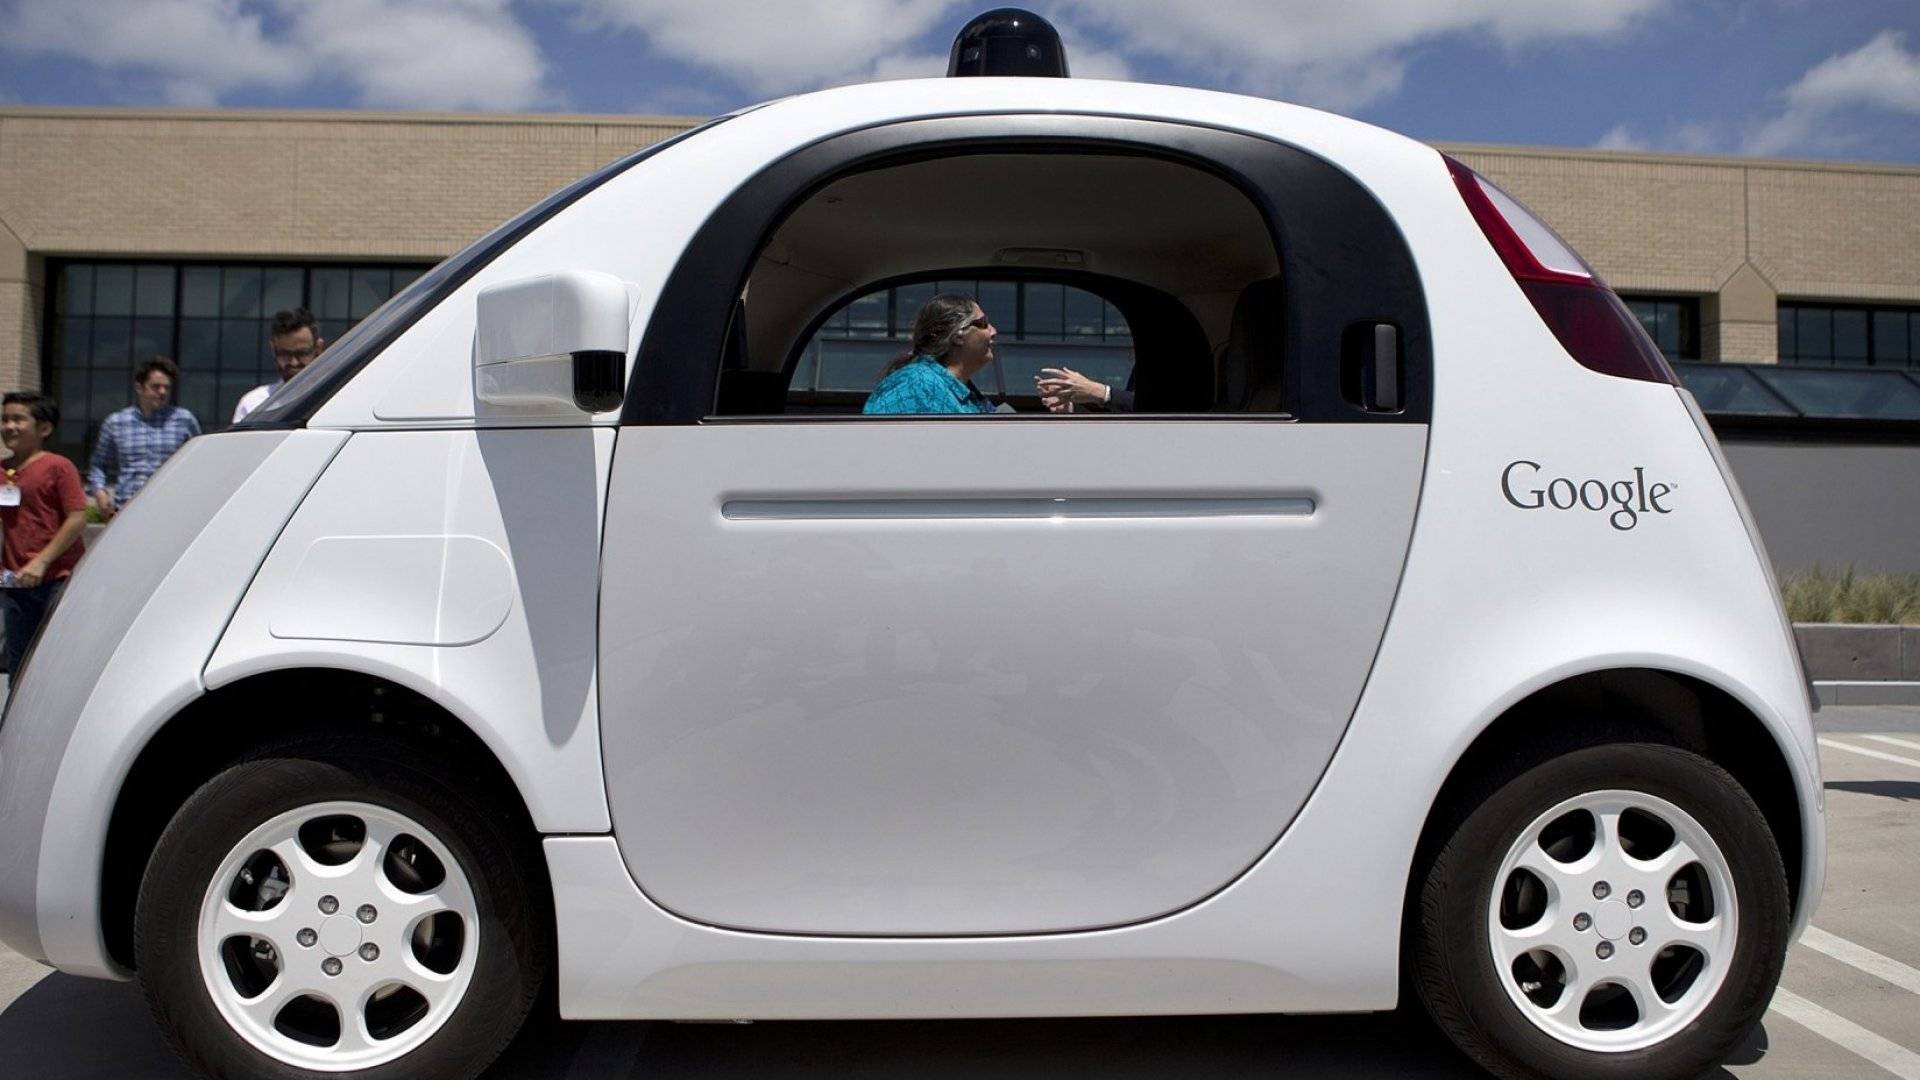 Беспилотные автомобили яндекс и google: какой лучше?